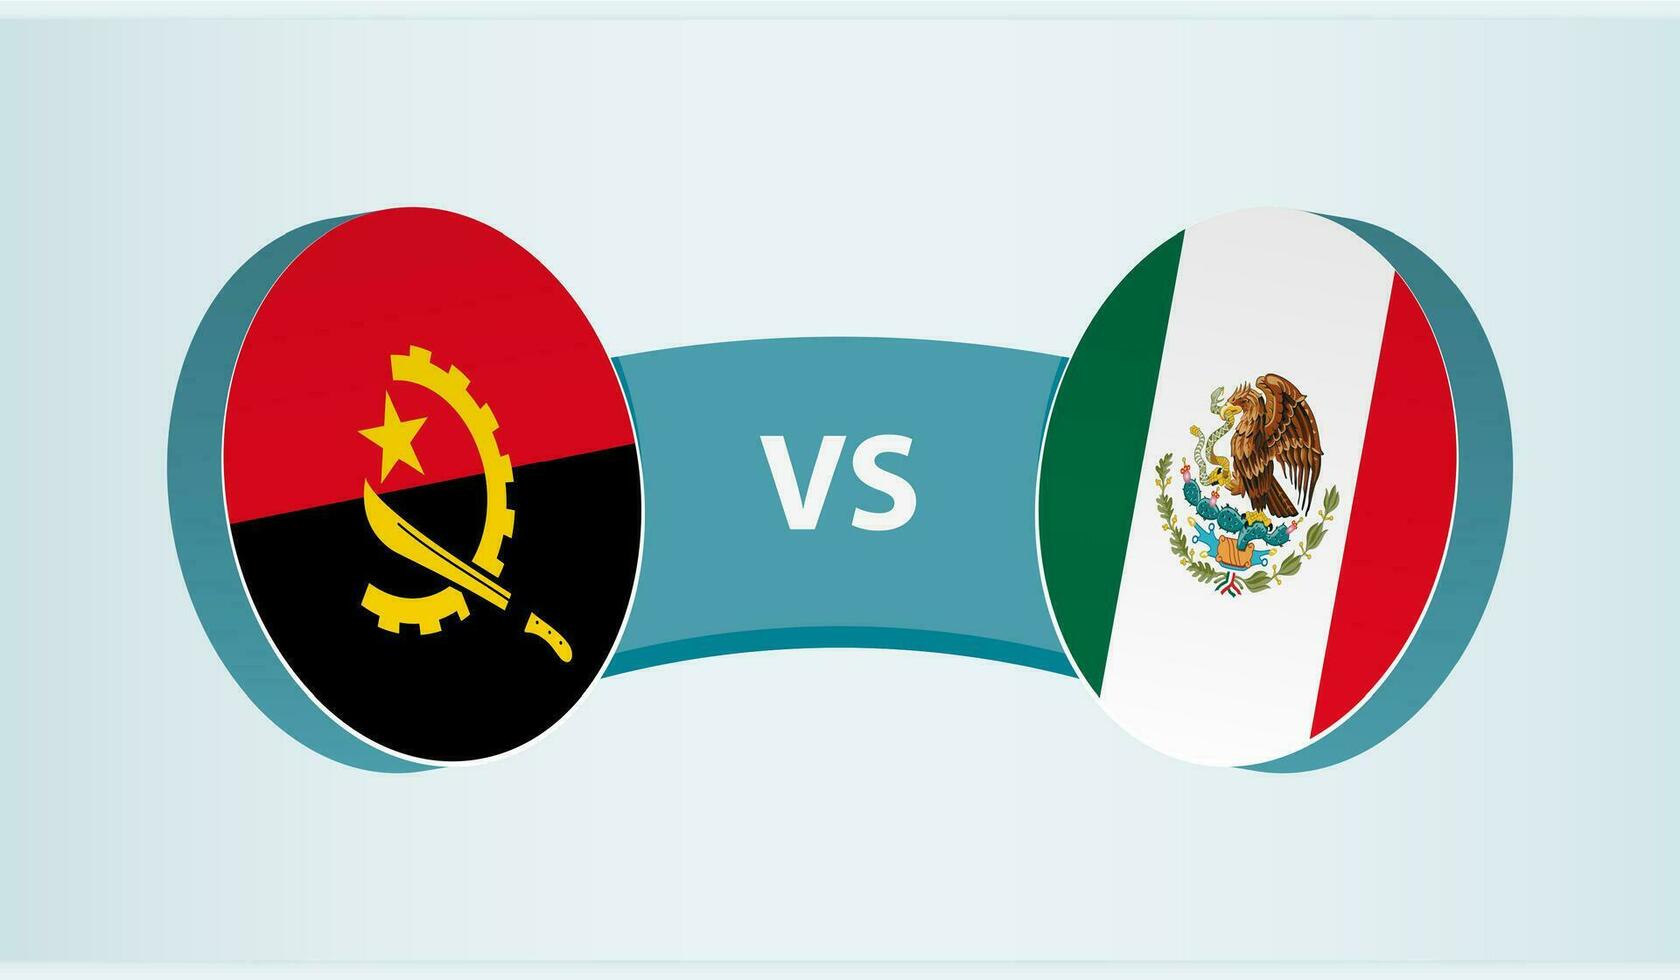 angola mot Mexiko, team sporter konkurrens begrepp. vektor